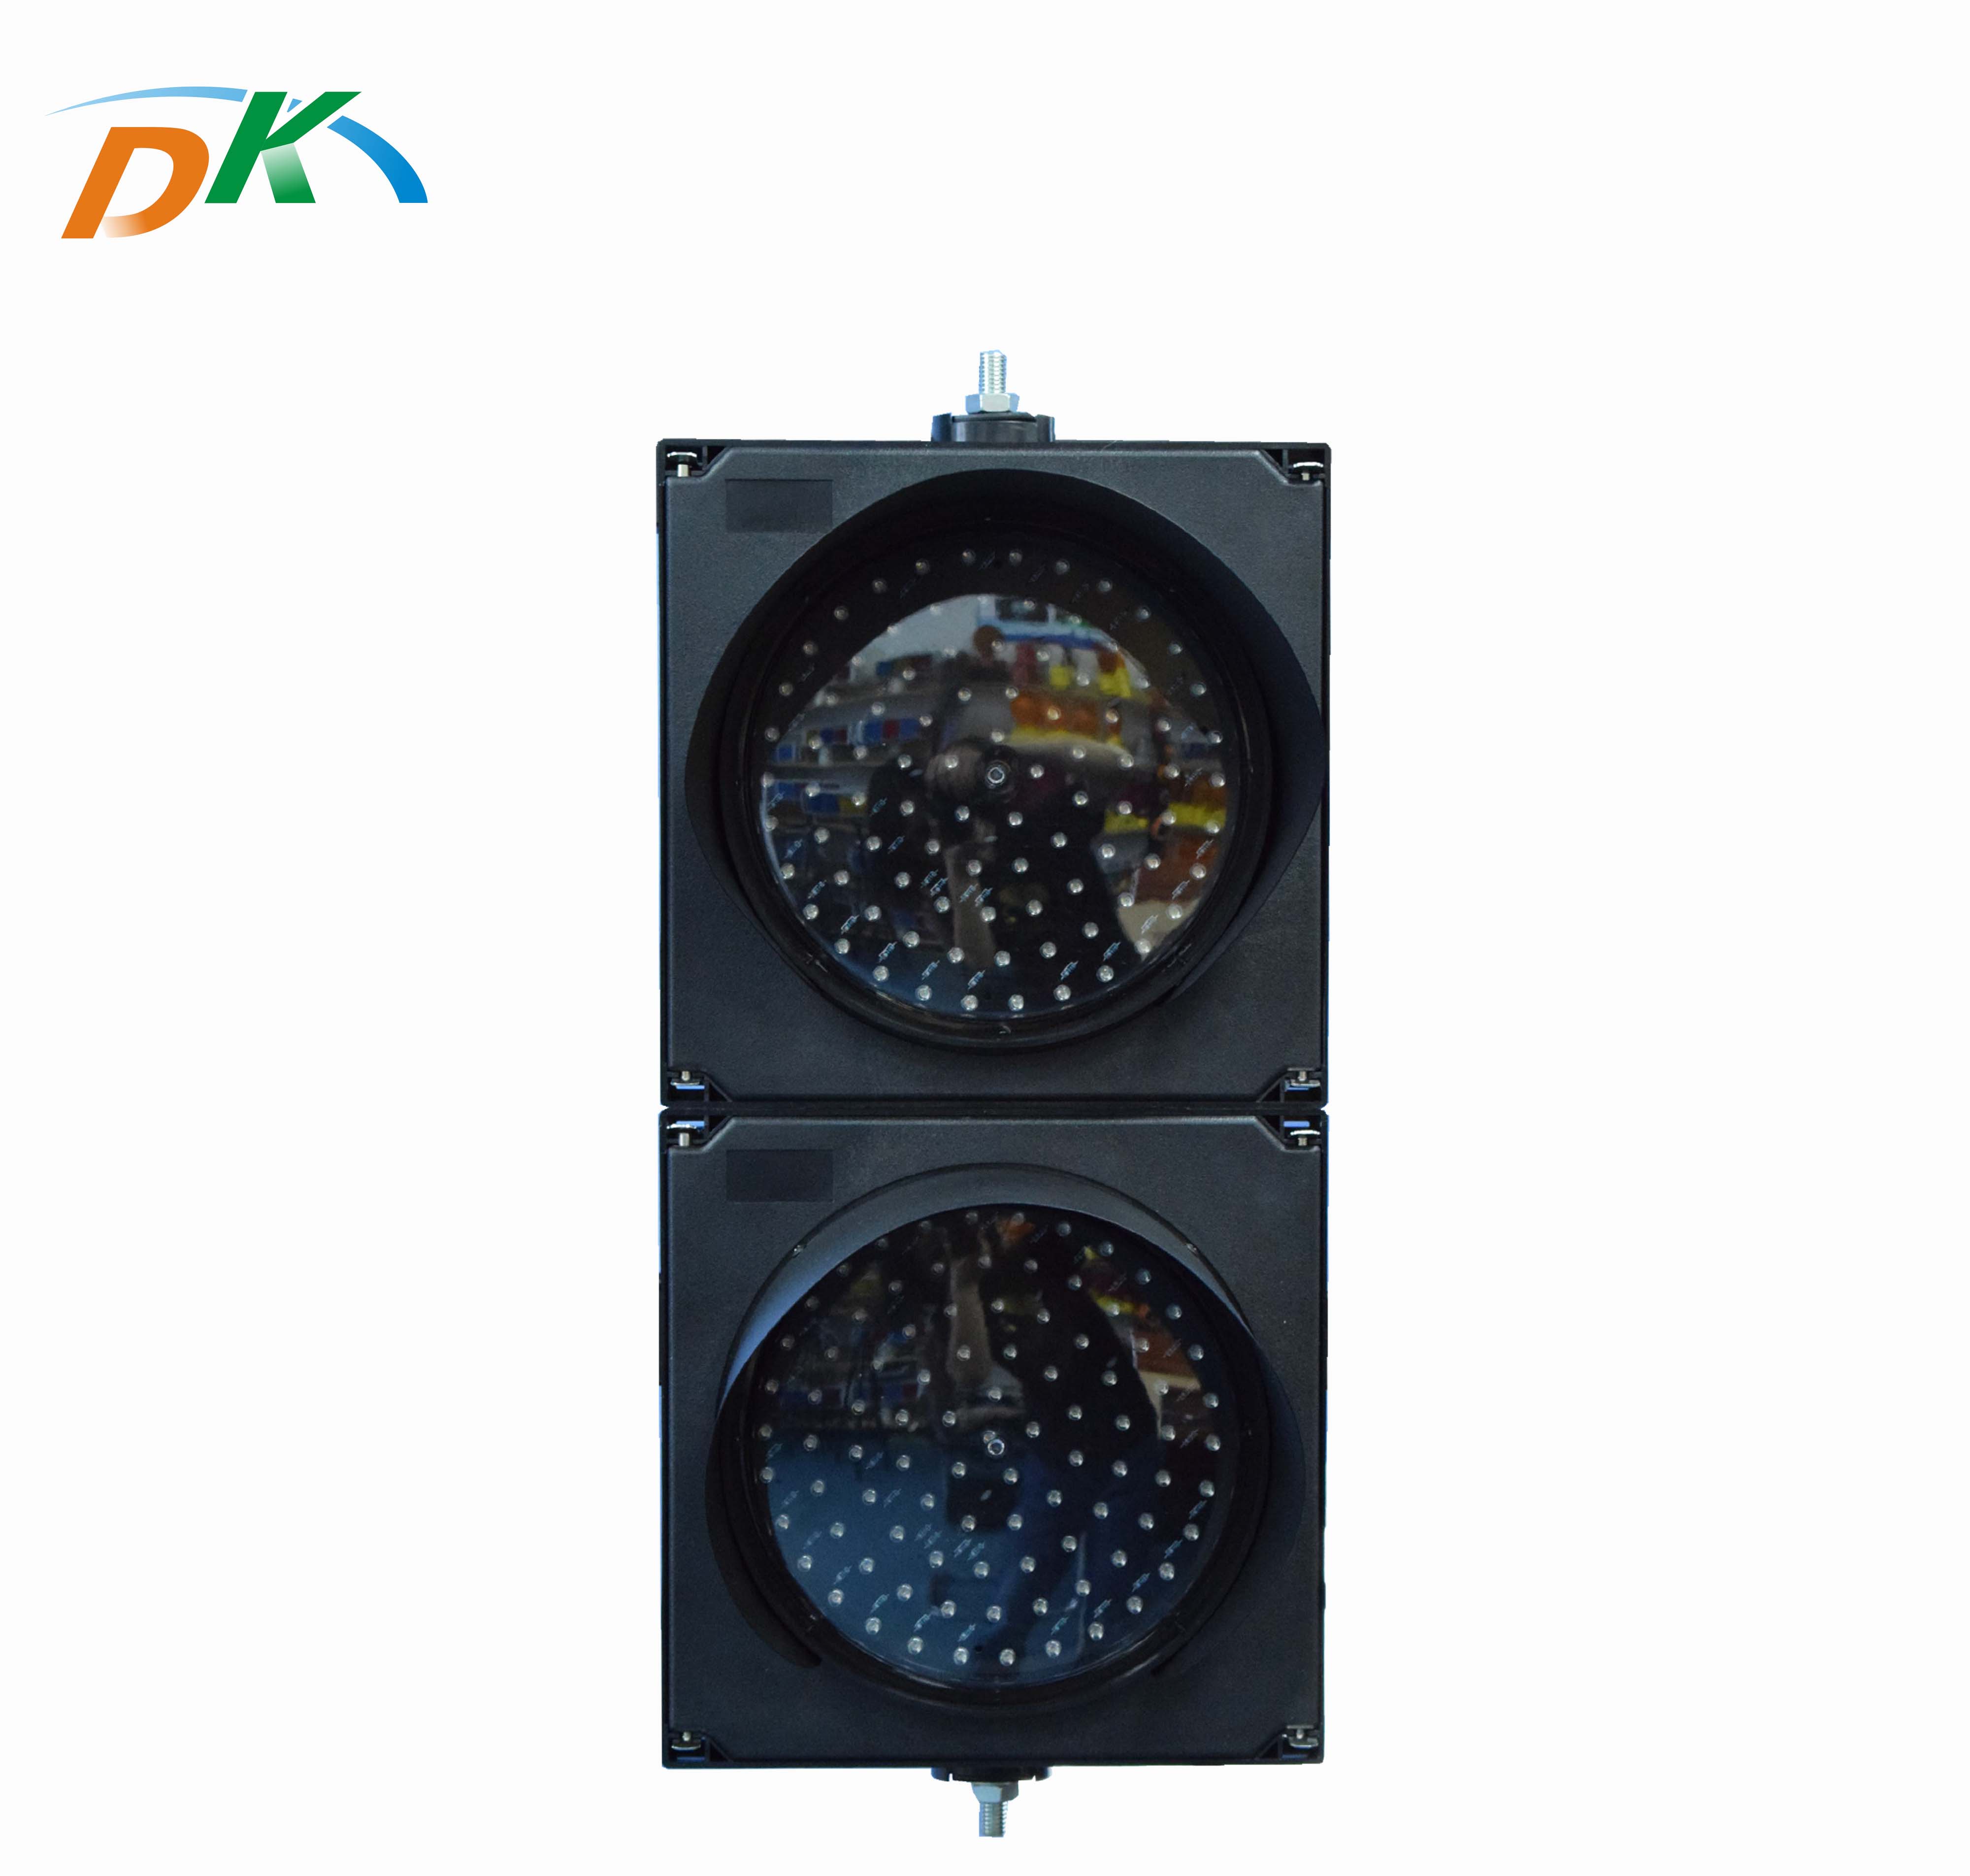 DK LED Traffic Roadway Emergency Safety Warning LED Flashing Light